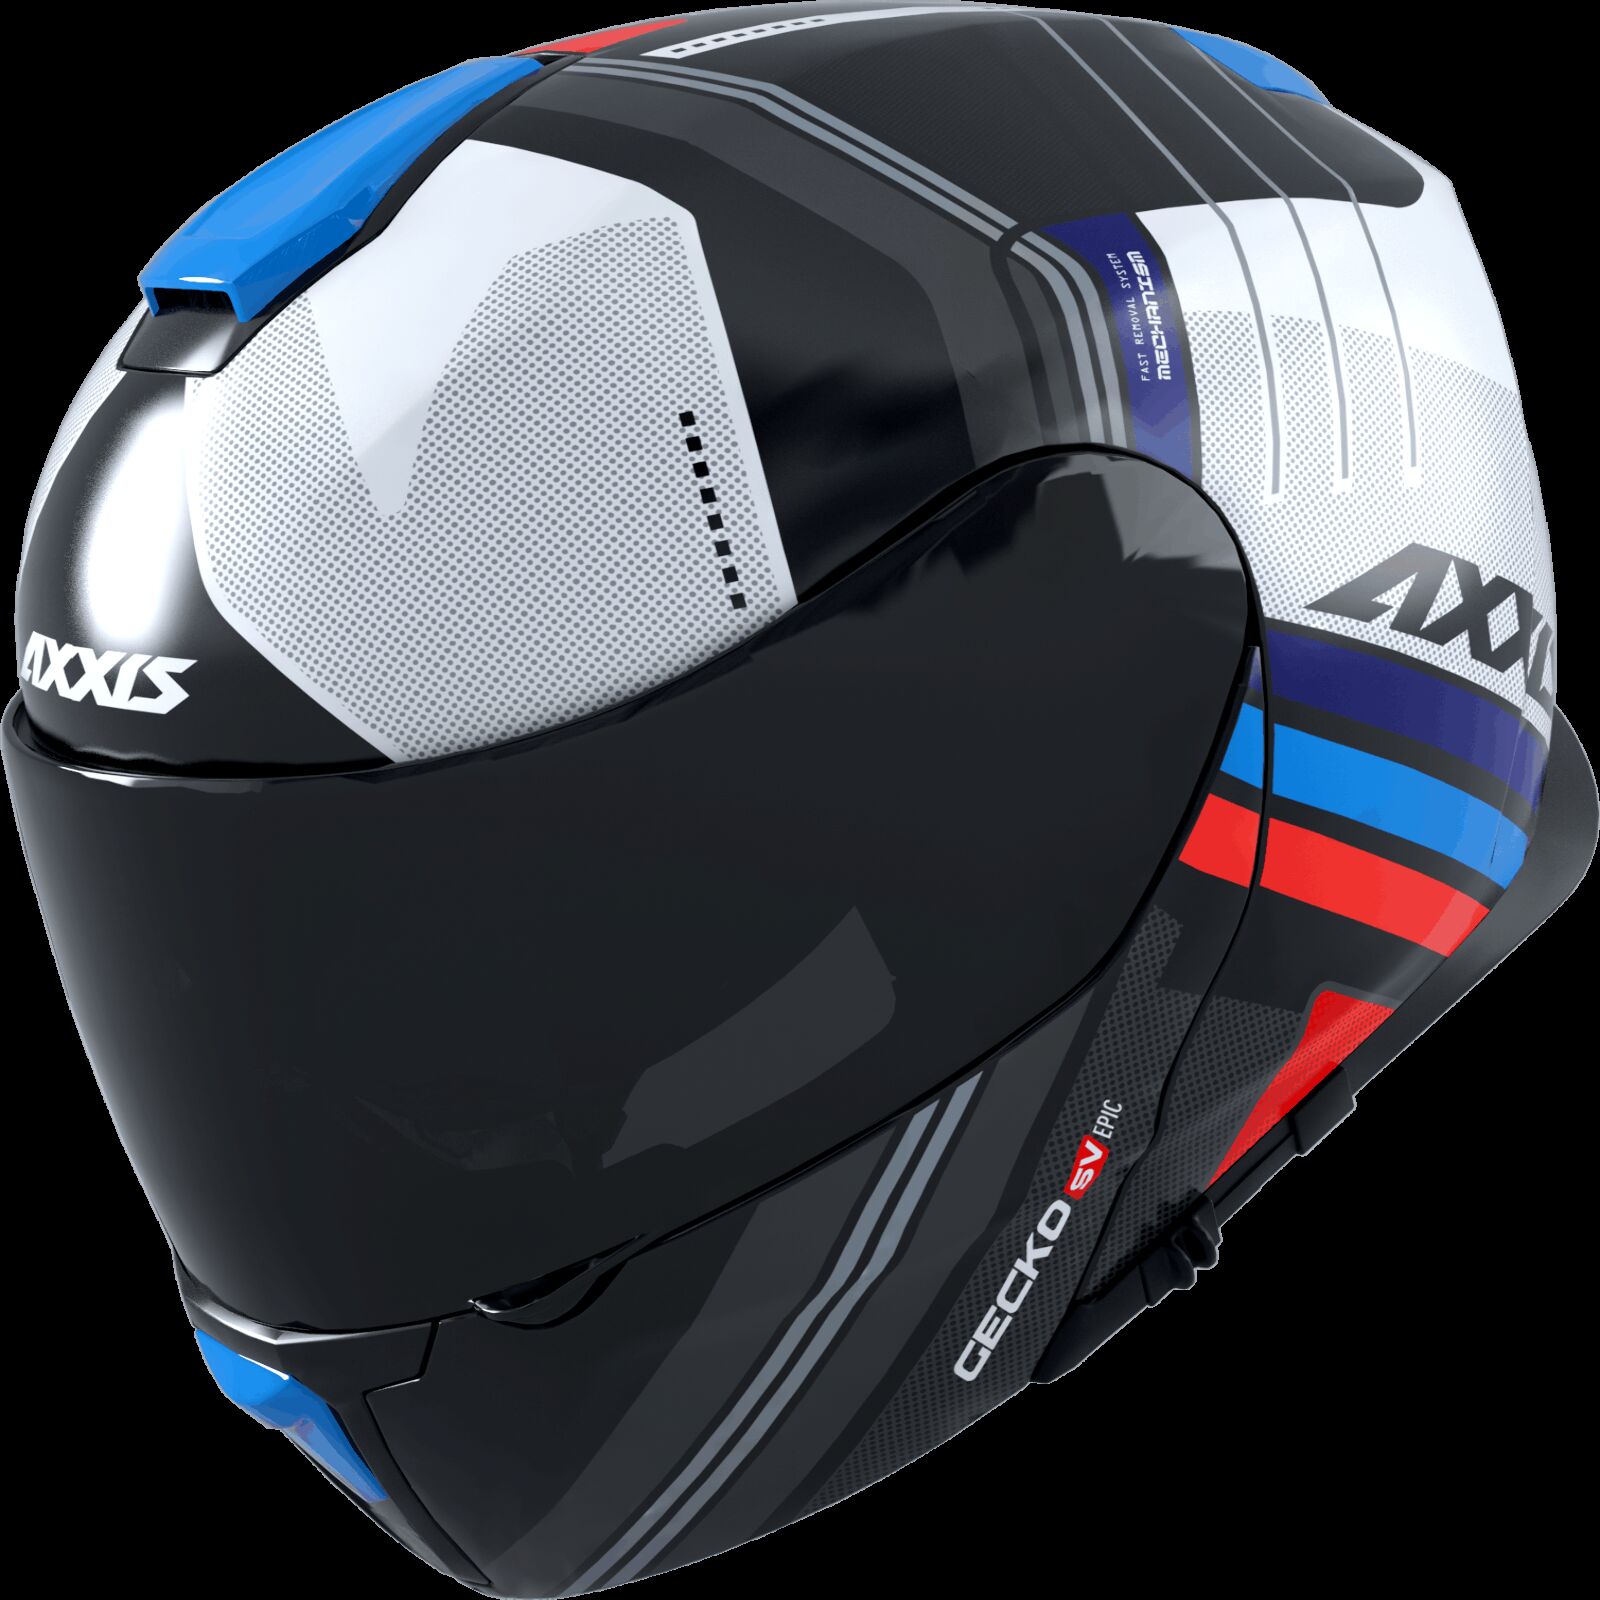 Obrázek produktu Výklopná helma AXXIS GECKO SV ABS epic b7 lesklá modrá S 42627311714